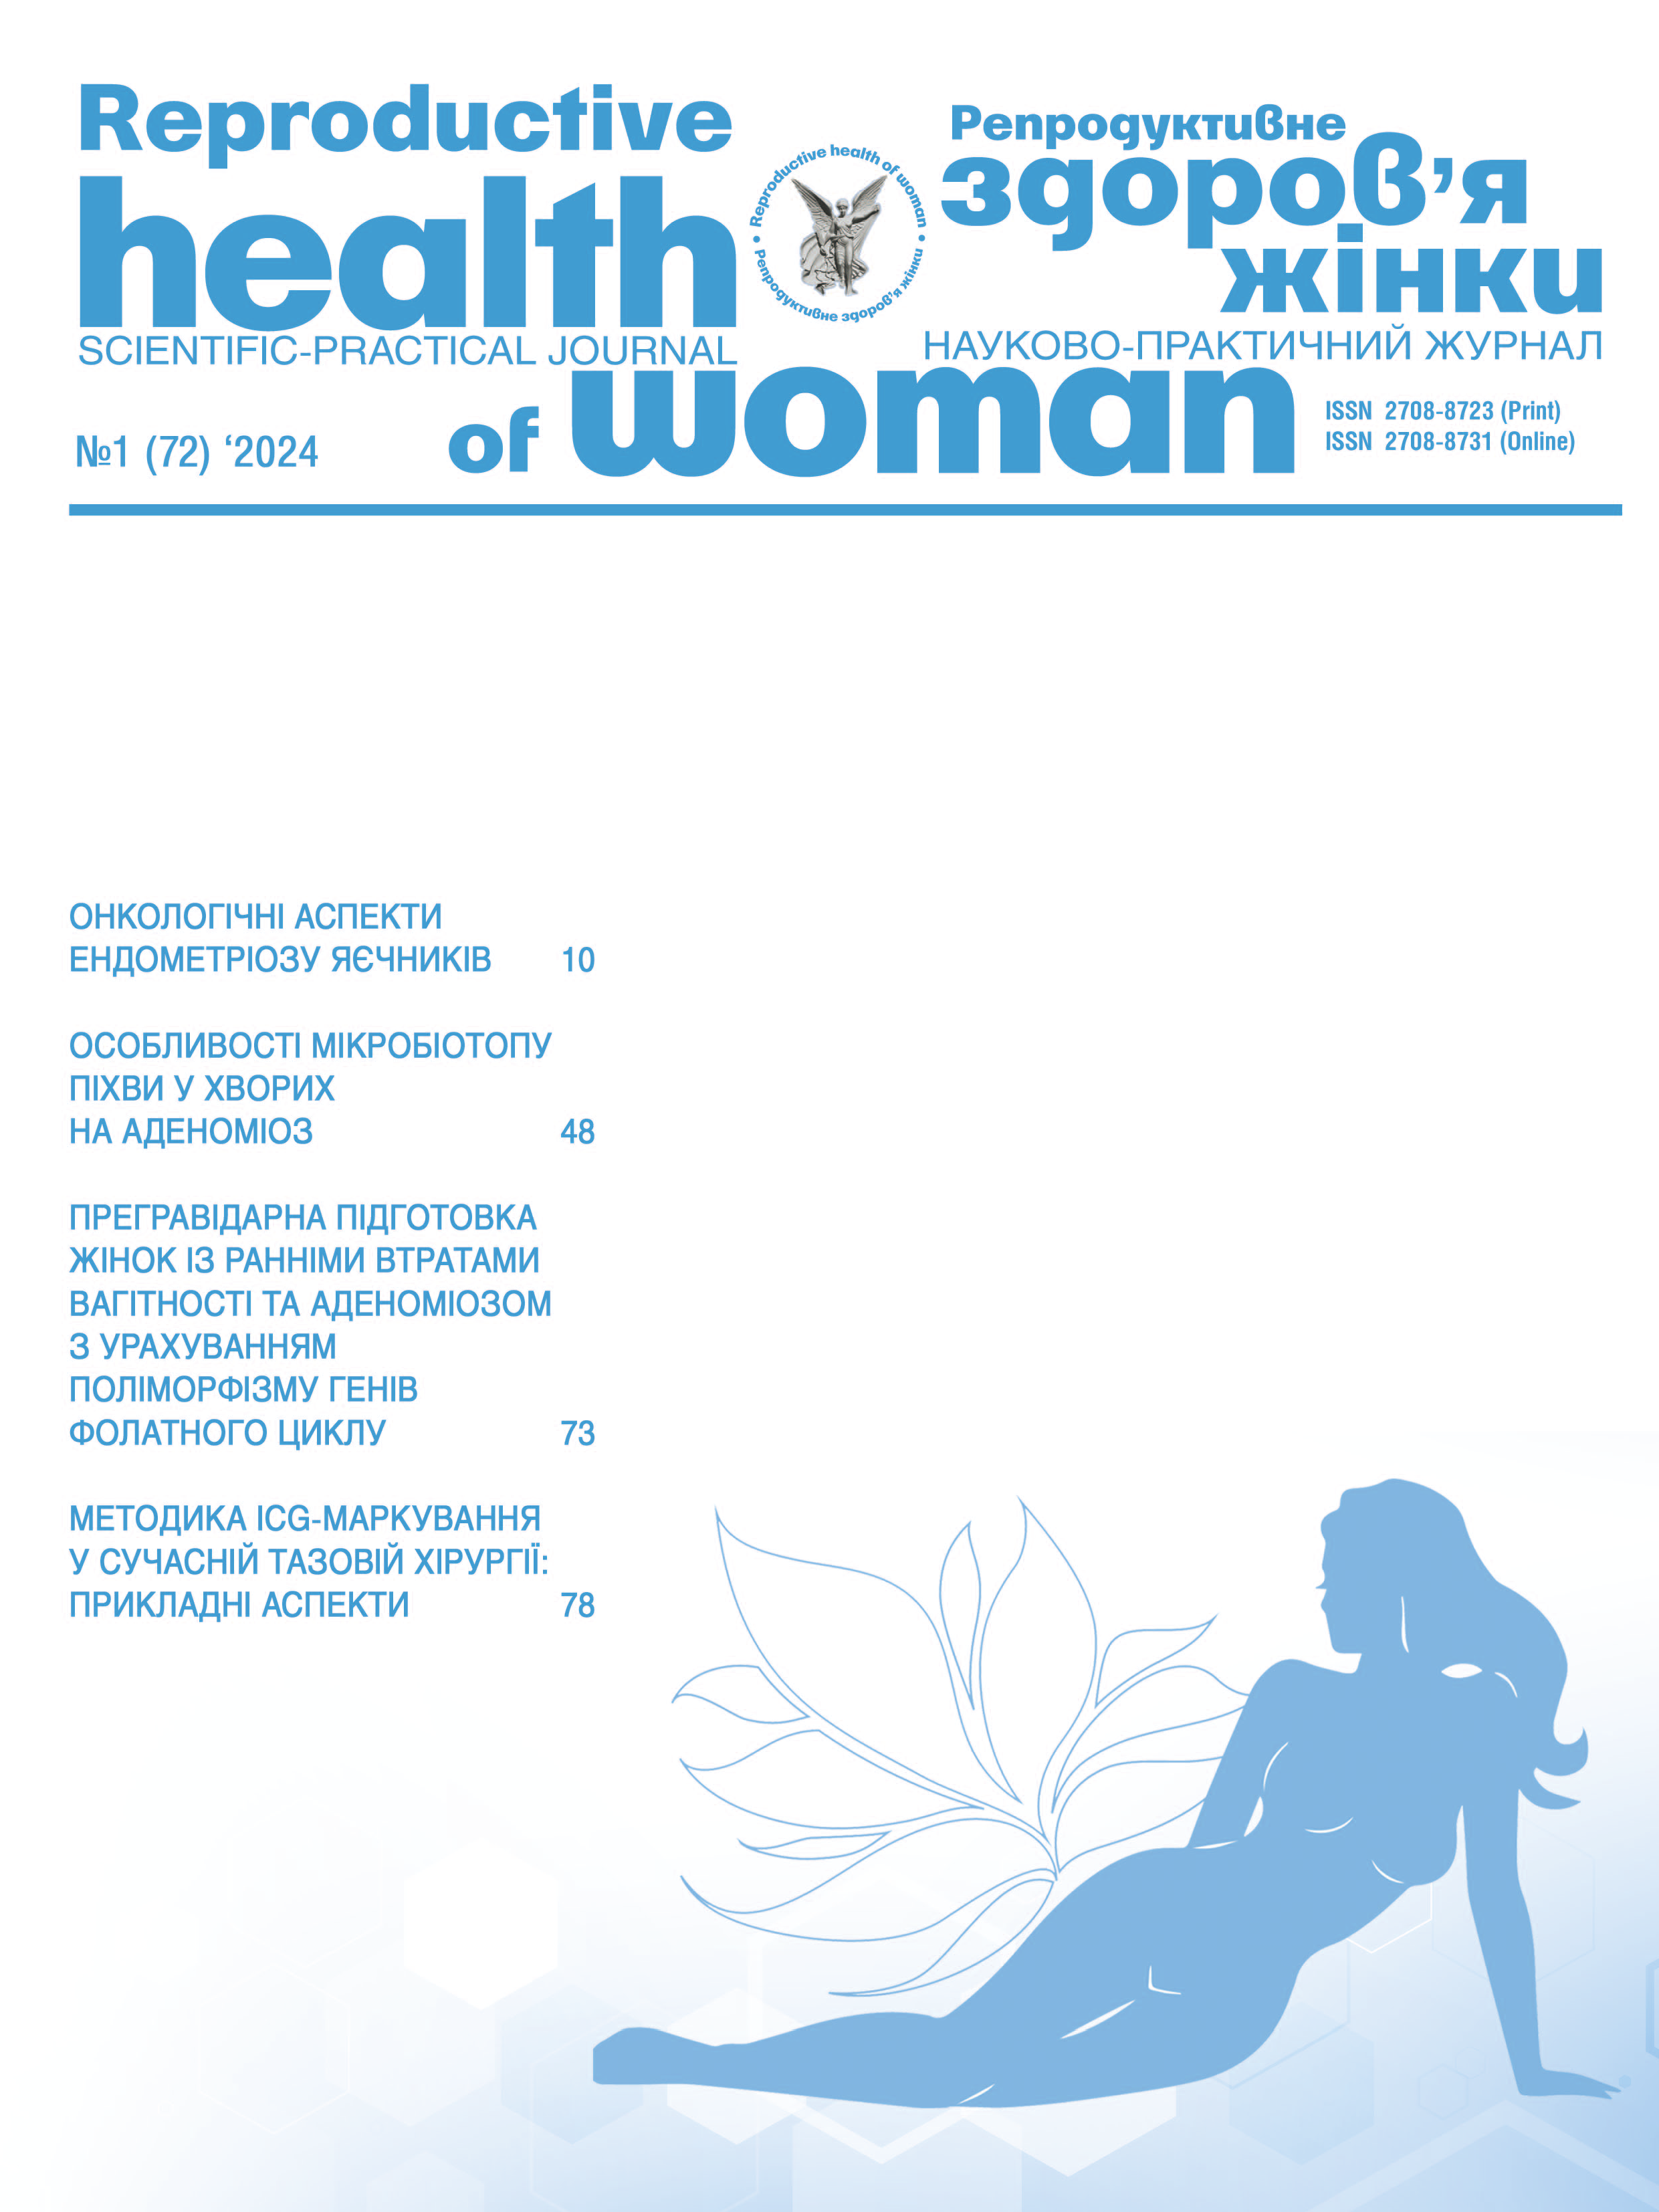 Репродуктивне здоров'я жінки № 1 (2024)